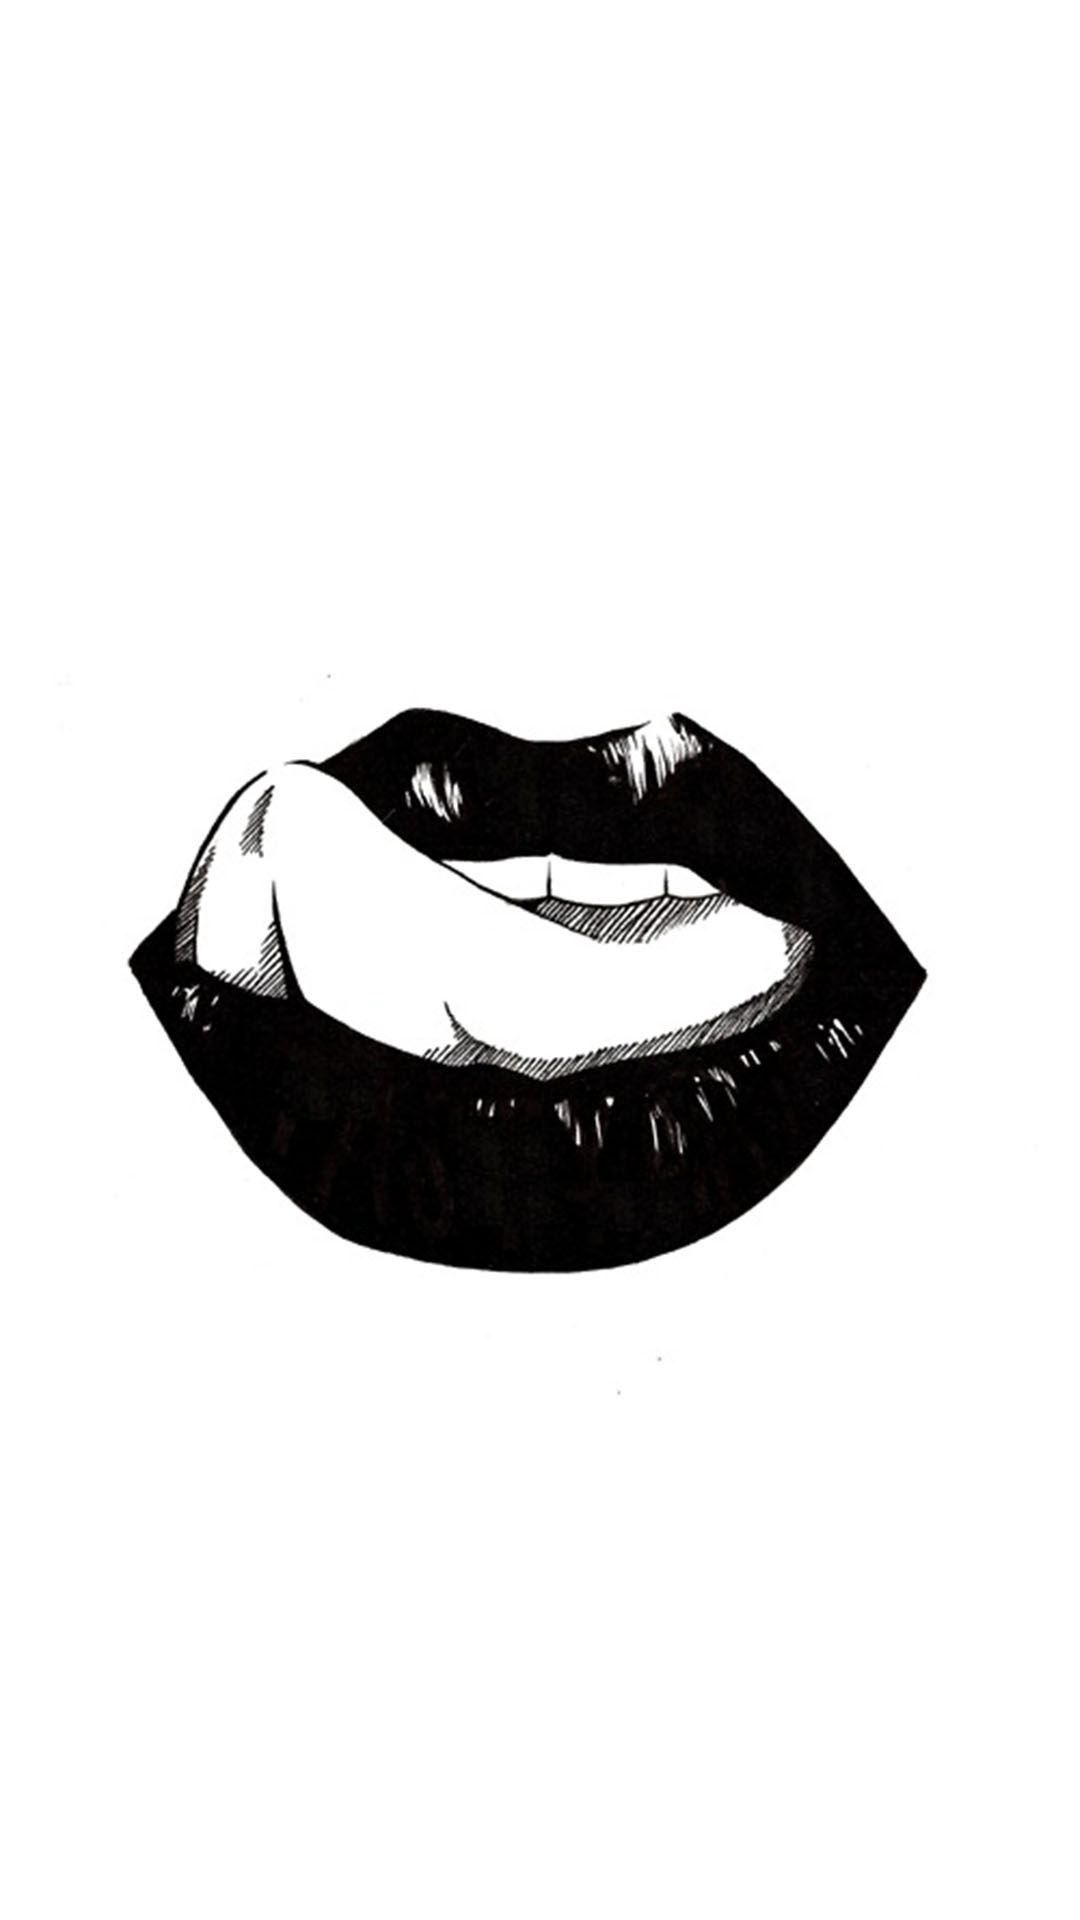 Red Lips Girl Sleeping Iphone Wallpaper - Dibujos De Labios En Blanco Y Negro , HD Wallpaper & Backgrounds